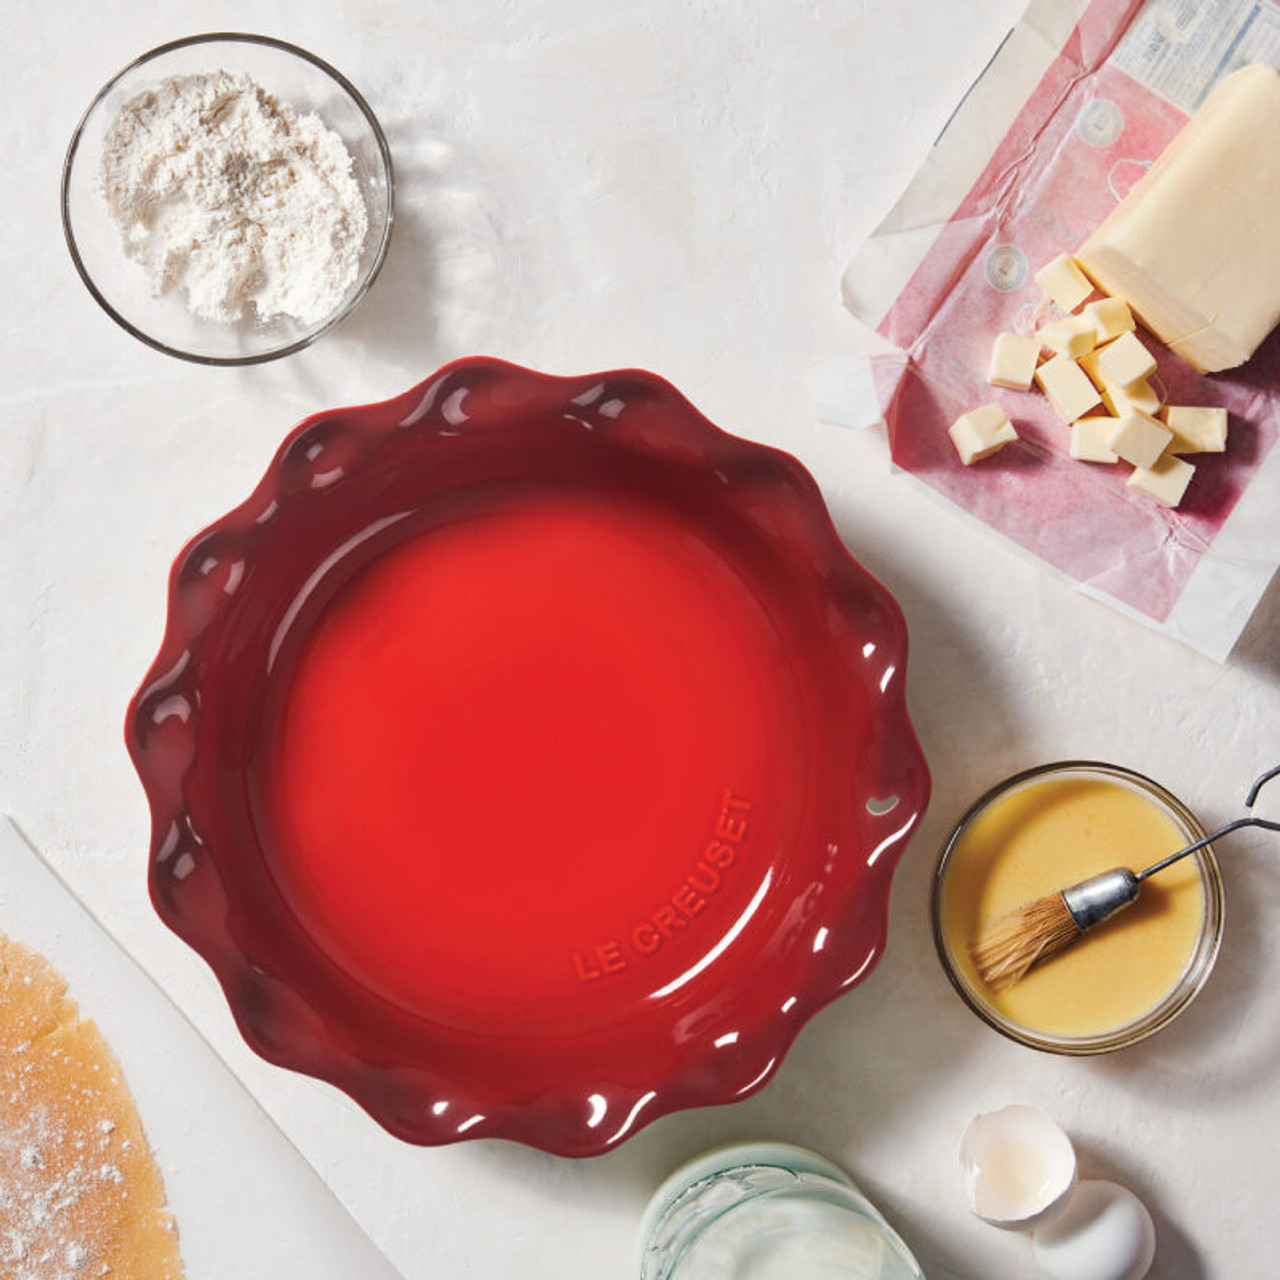 Le Creuset Cerise Red Stoneware Ceramic Pie Dish + Reviews